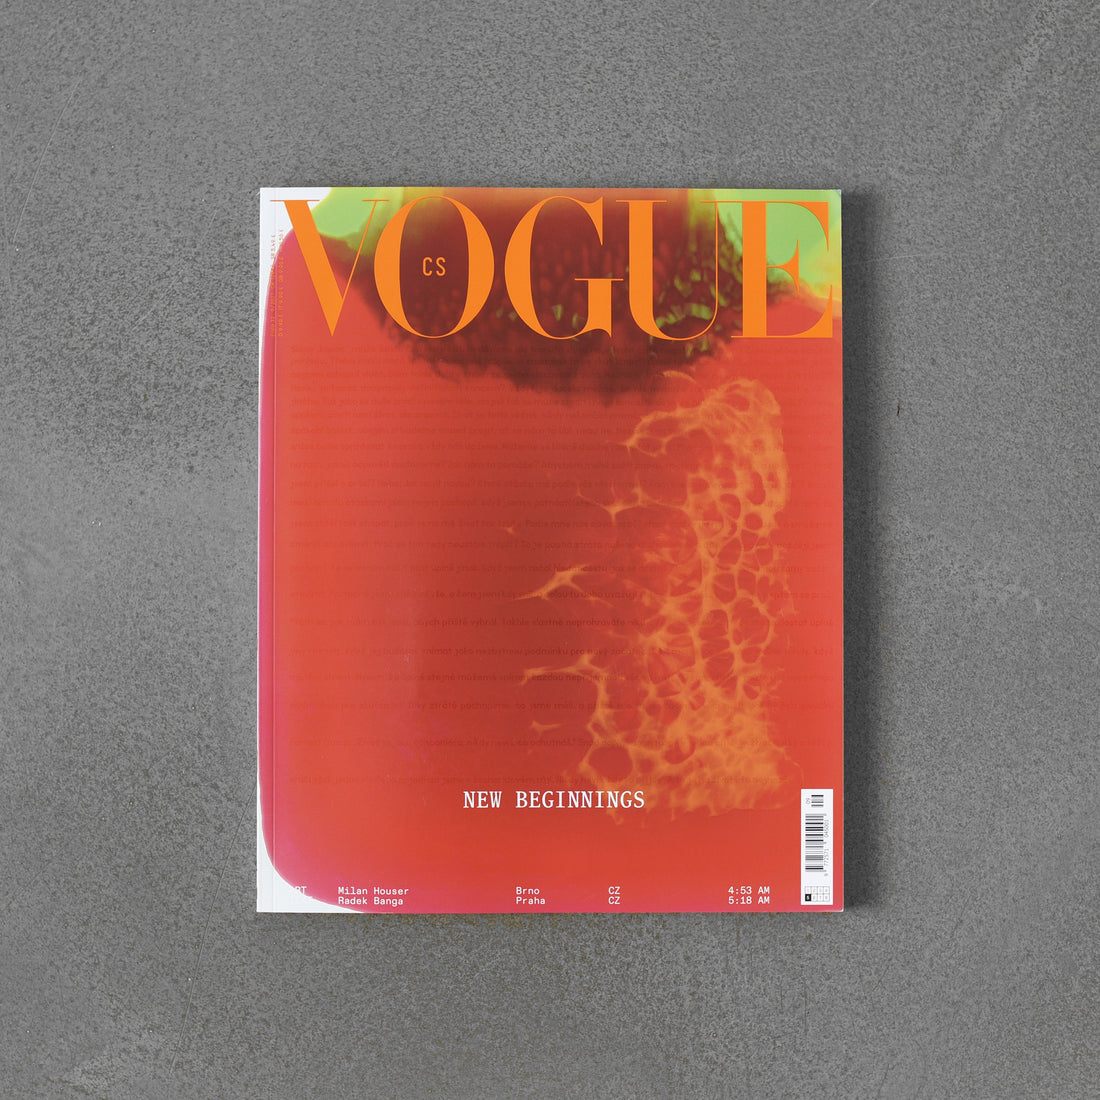 Vogue CS, 09.2021 (zestaw ośmiu okładek)